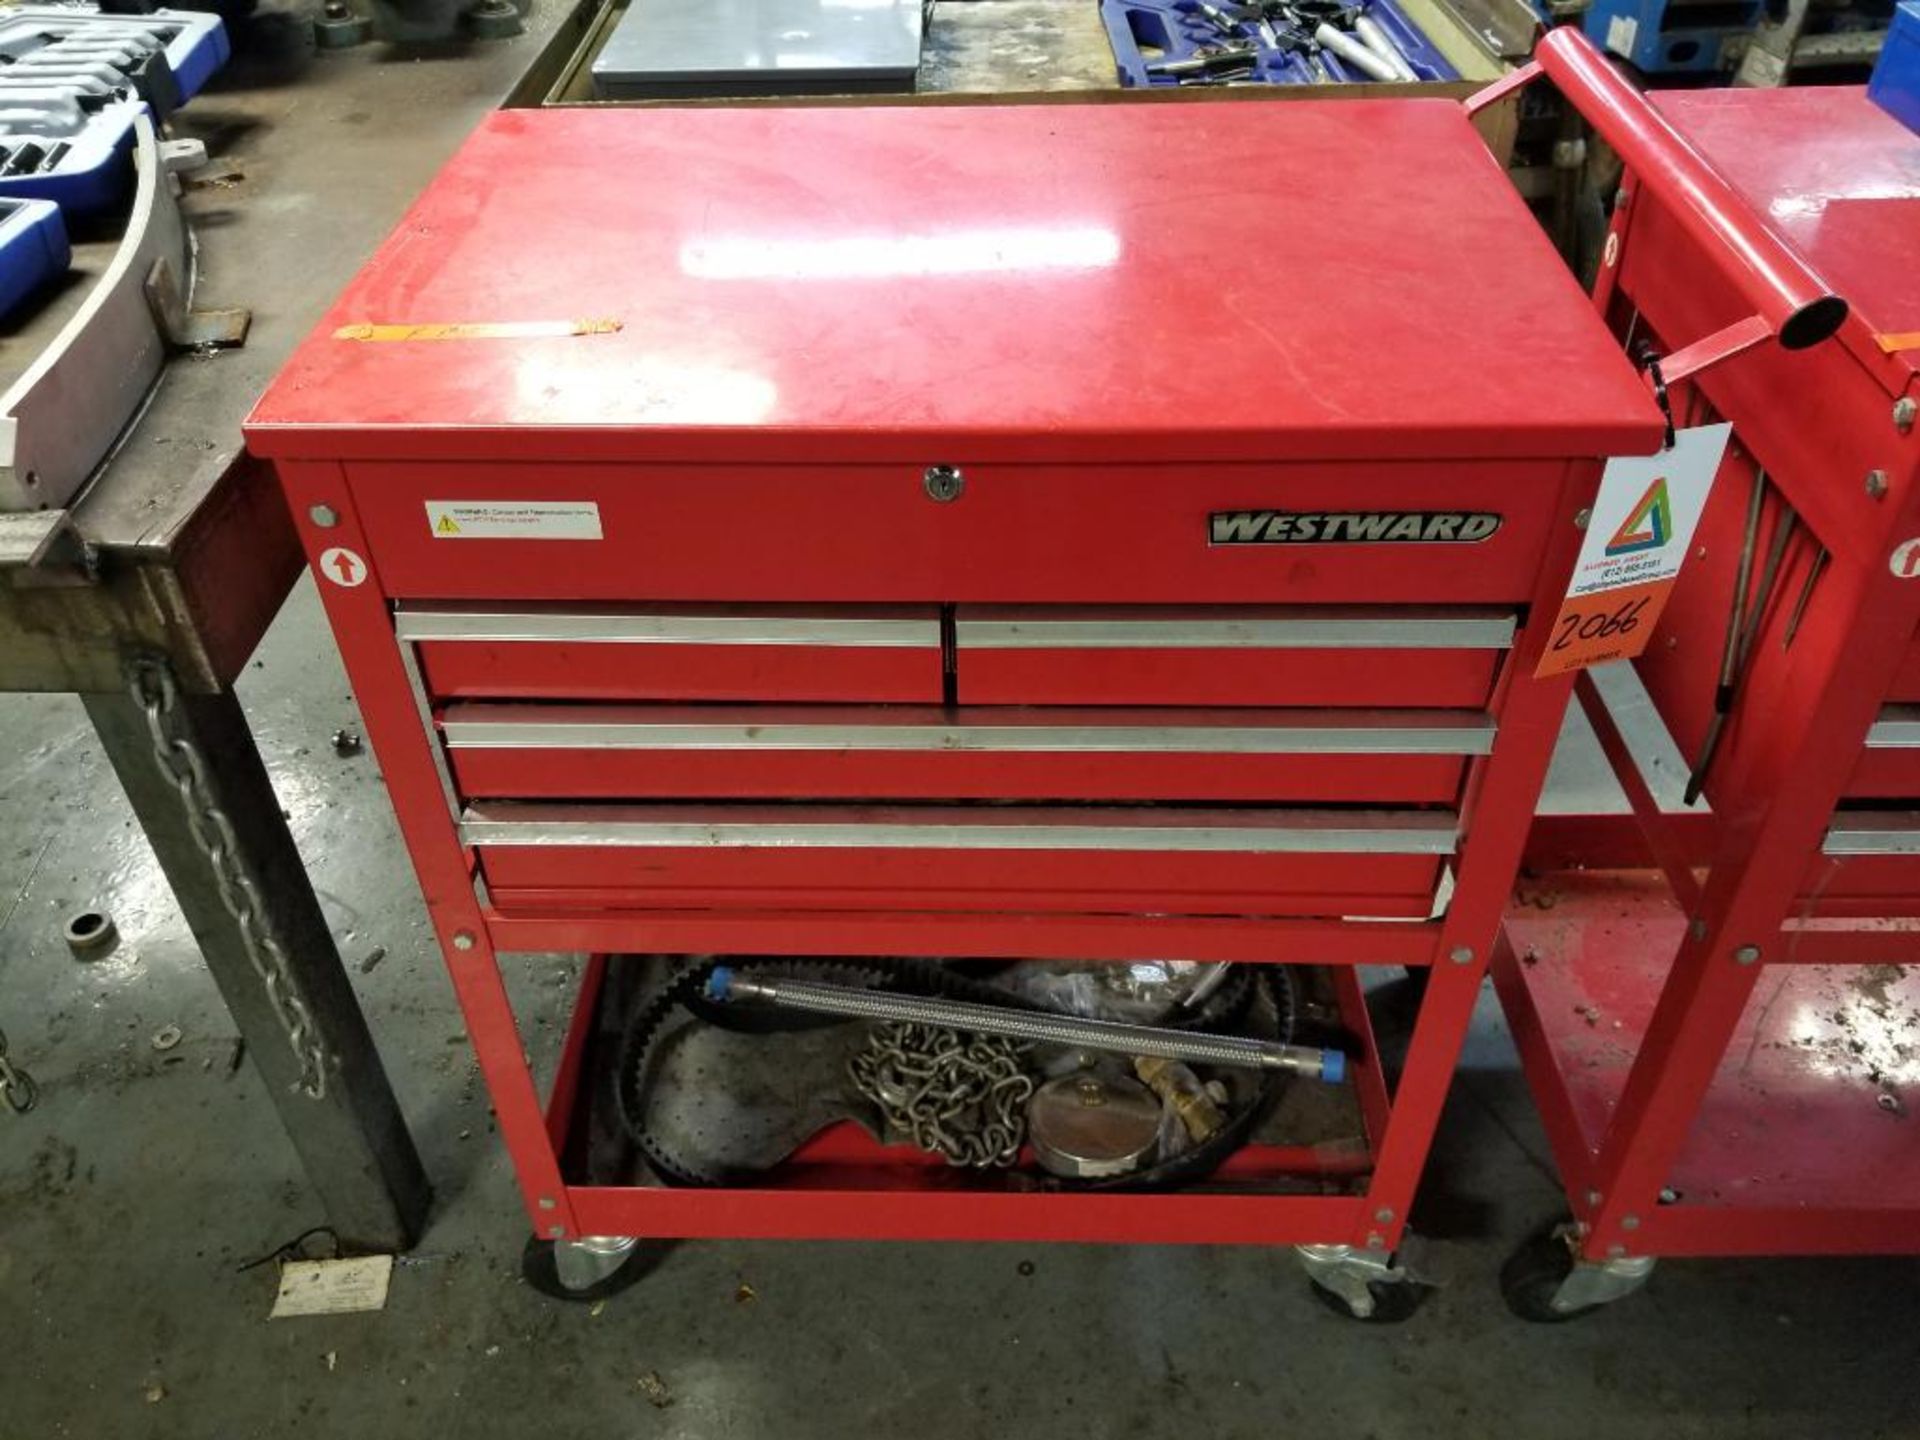 Westward 4-drawer rolling tool box with bottom shelf